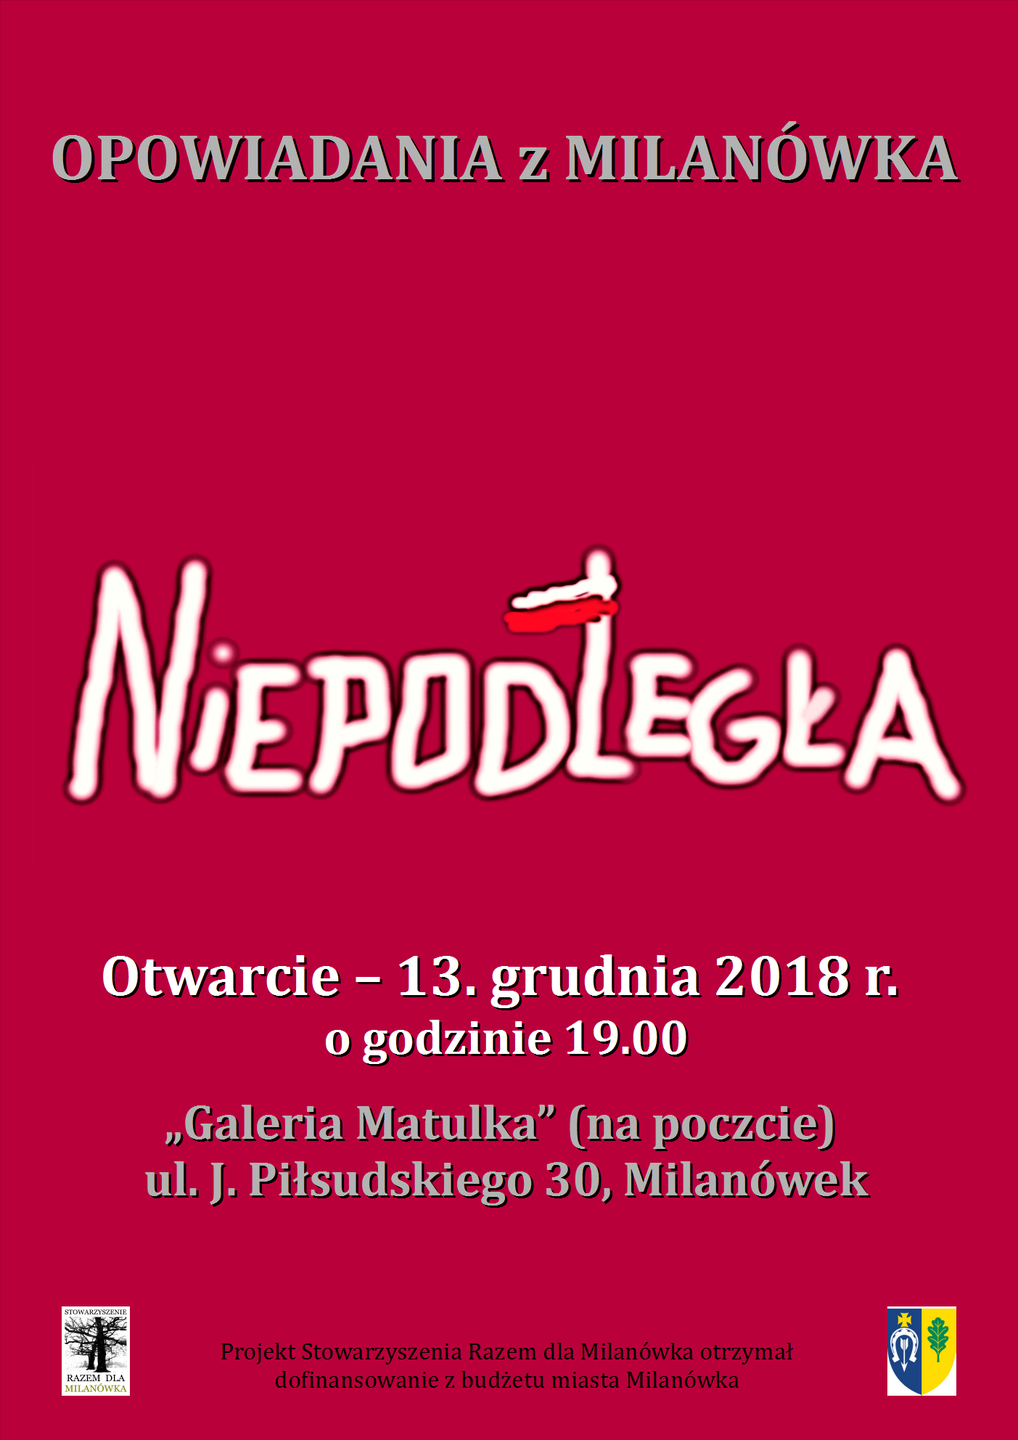 Plakat promujący wystawę "Opowiadania z Milanówka - Niepodległa"